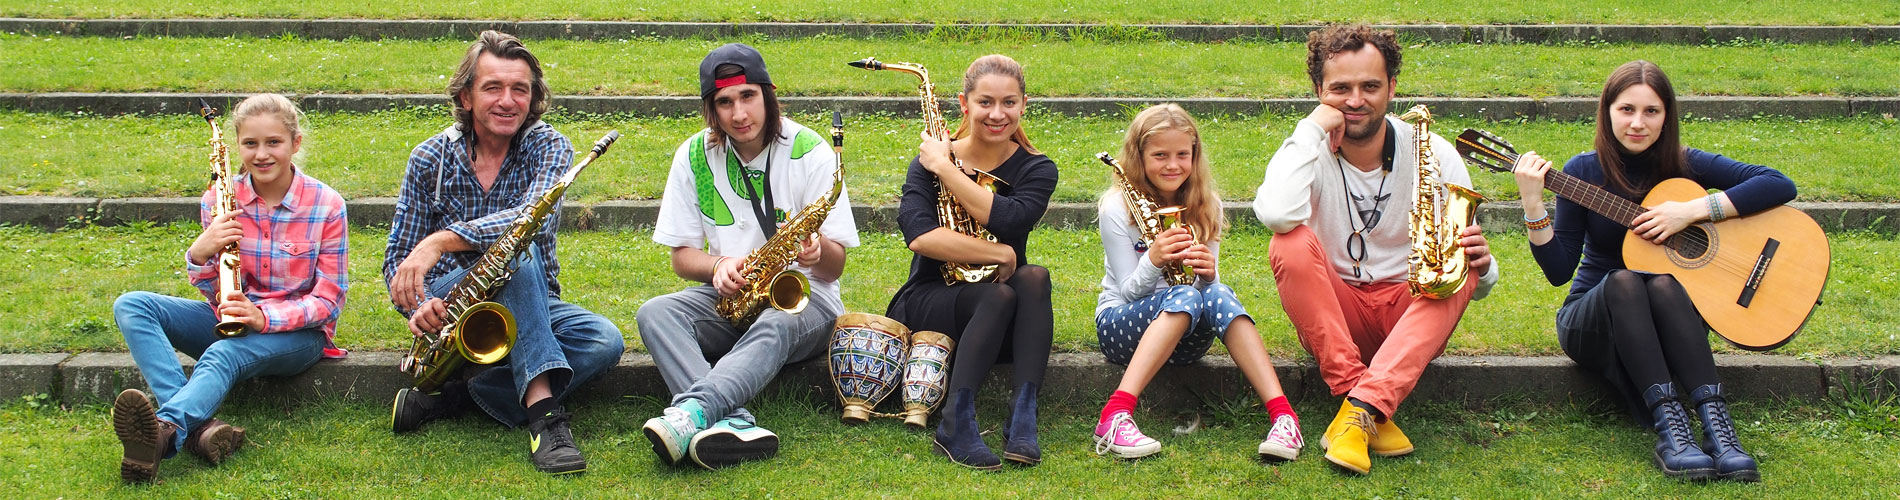 Positive Musikschule – Musikunterricht in Düsseldorf: Klavierunterricht, Saxophonunterricht, Klarinette-Unterricht, Trompete-Unterricht, Gitarre-Unterricht, Gesangunterricht, sowie Gesang- und Musikaufnahme in eigenem Aufnahmestudio